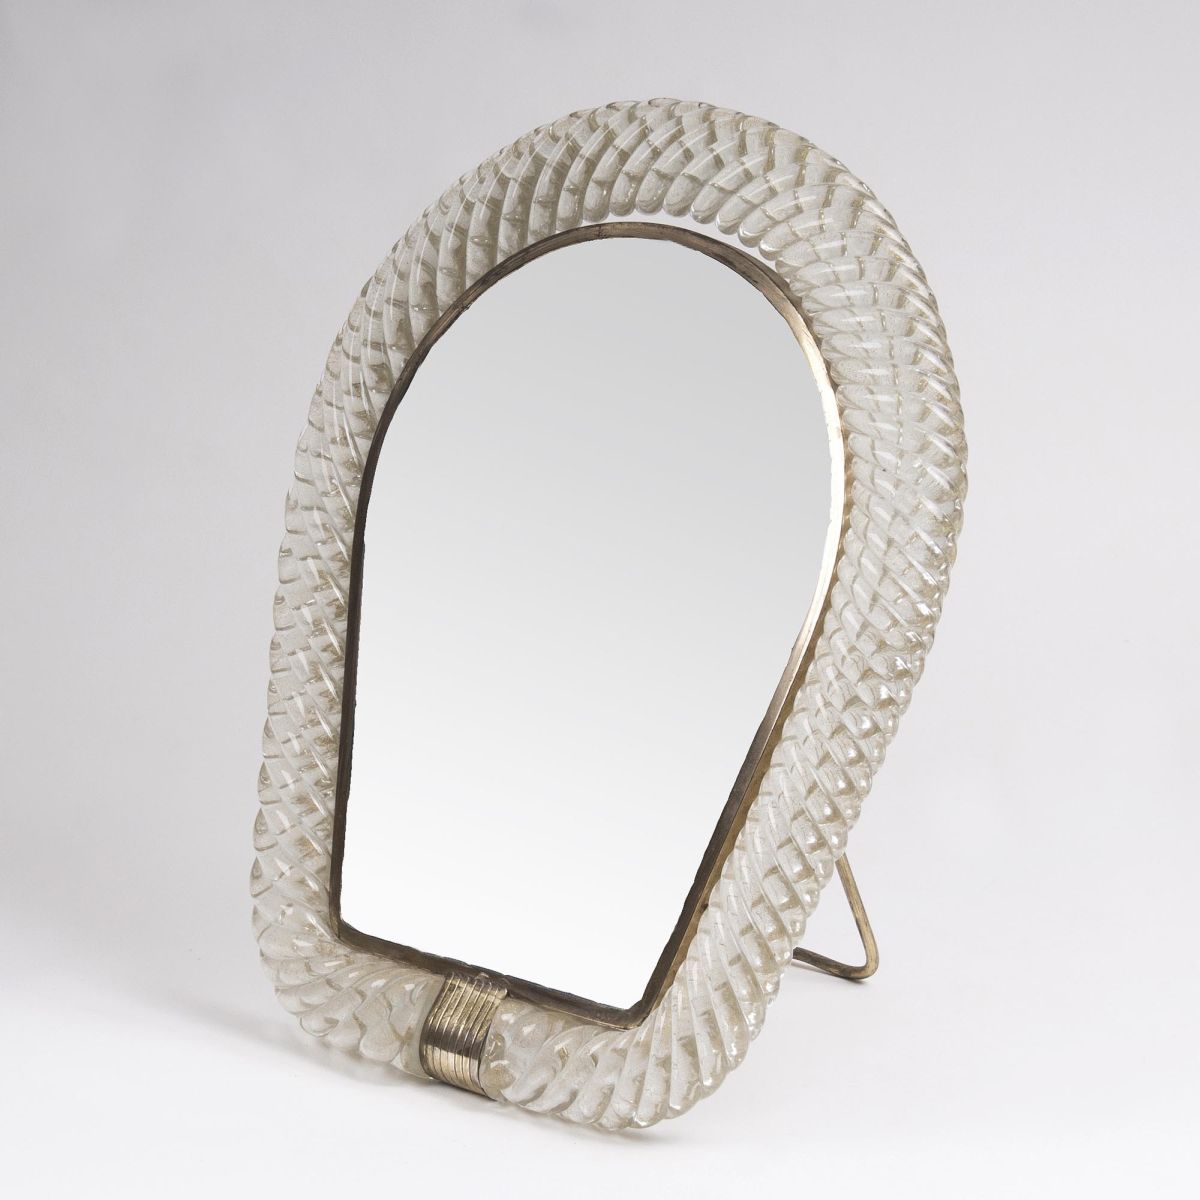 A Standing Mirror 'Specchio da tavolo'